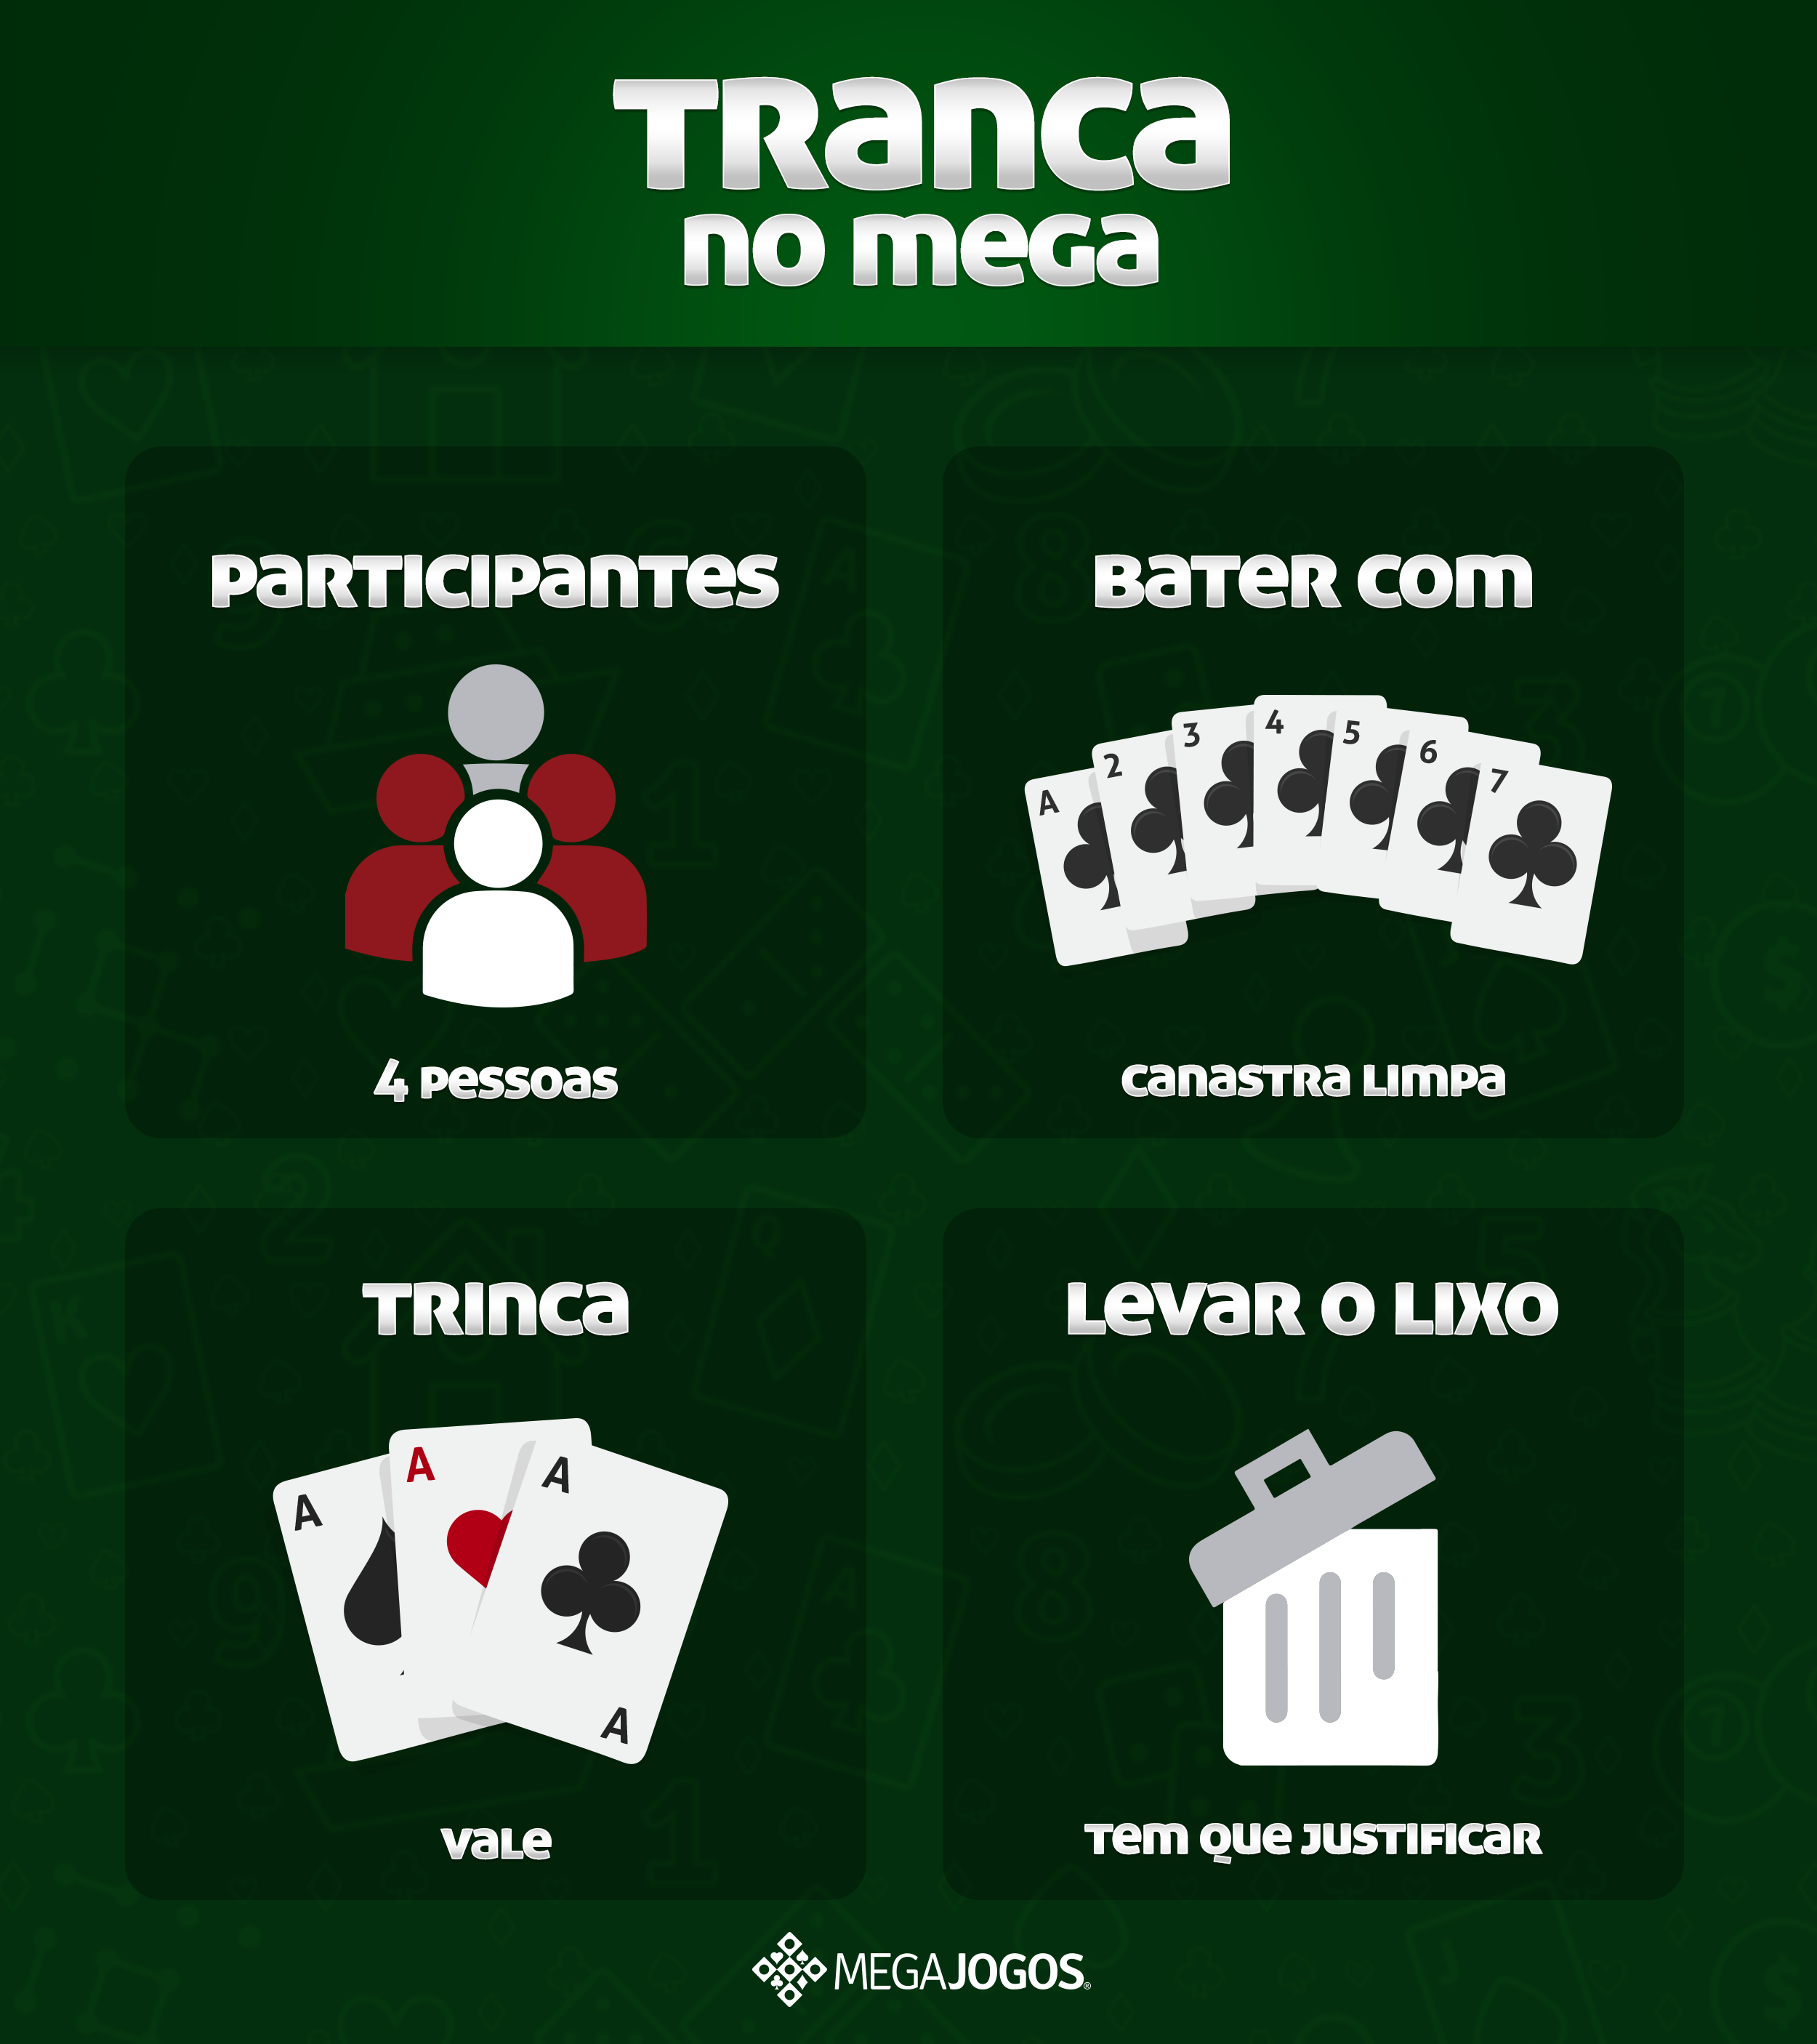 Tranca, um dos jogos de cartas que tem mais variantes de regras e